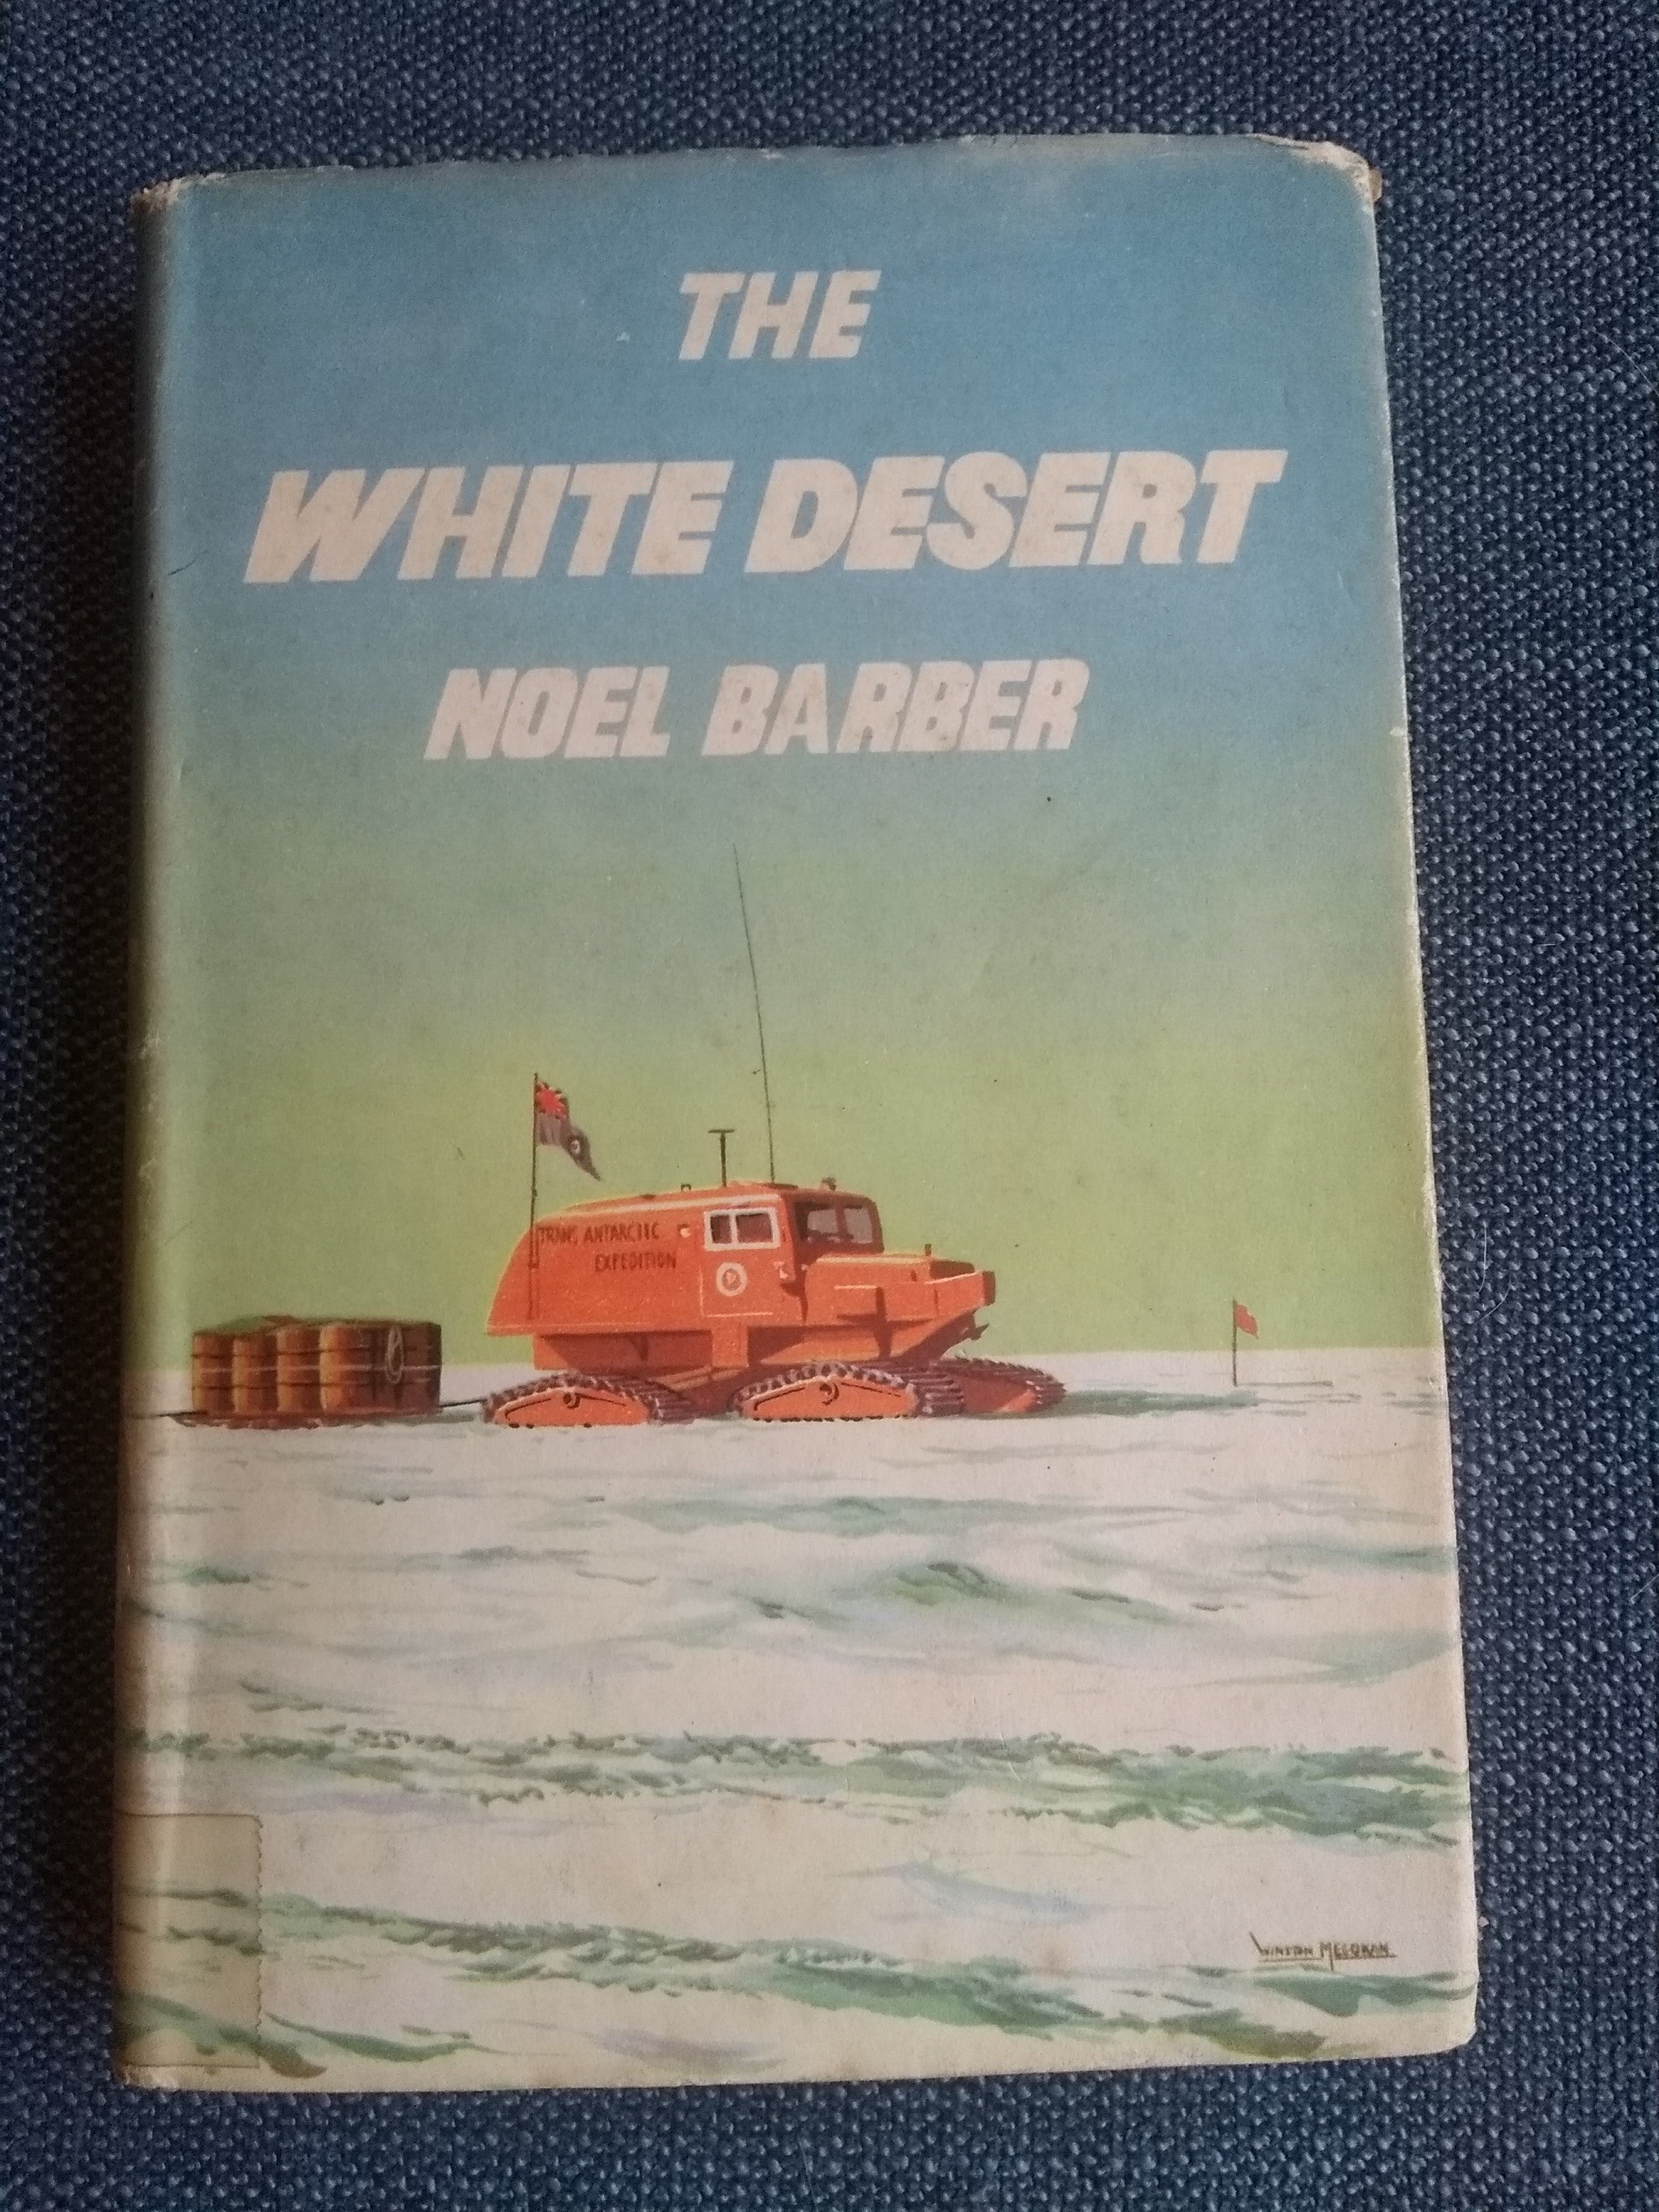 The White Desert, by Noel Barber